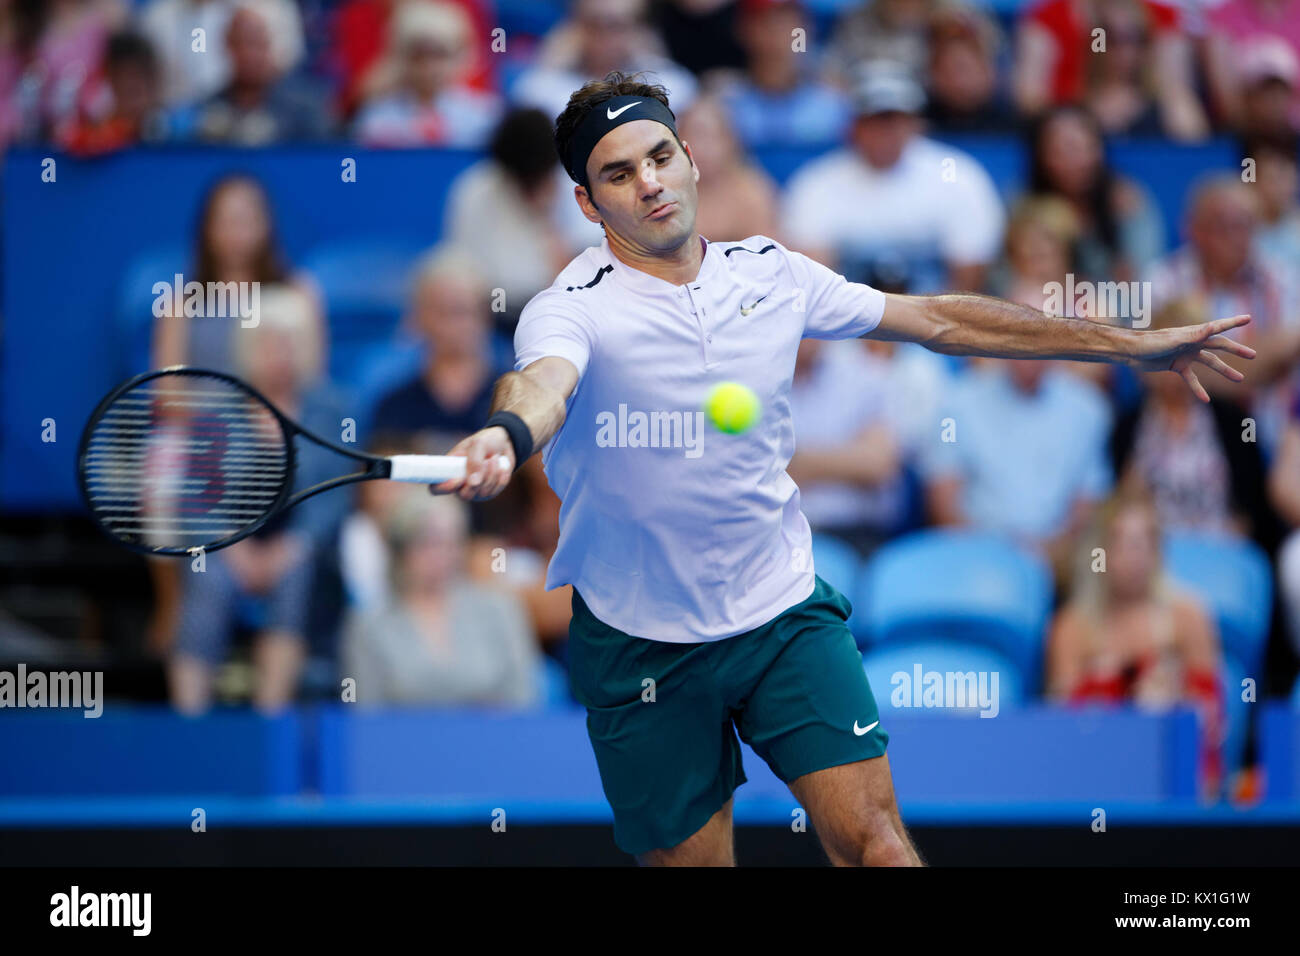 Perth, Australia. El 6 de enero, 2017. Roger Federer de Suiza devuelve el balón a Alexander Zverev oponente en la final de la Copa Hopman en Perth, Australia, Januray 6, 2018. Crédito: Trevor Collens/Alamy Live News Foto de stock